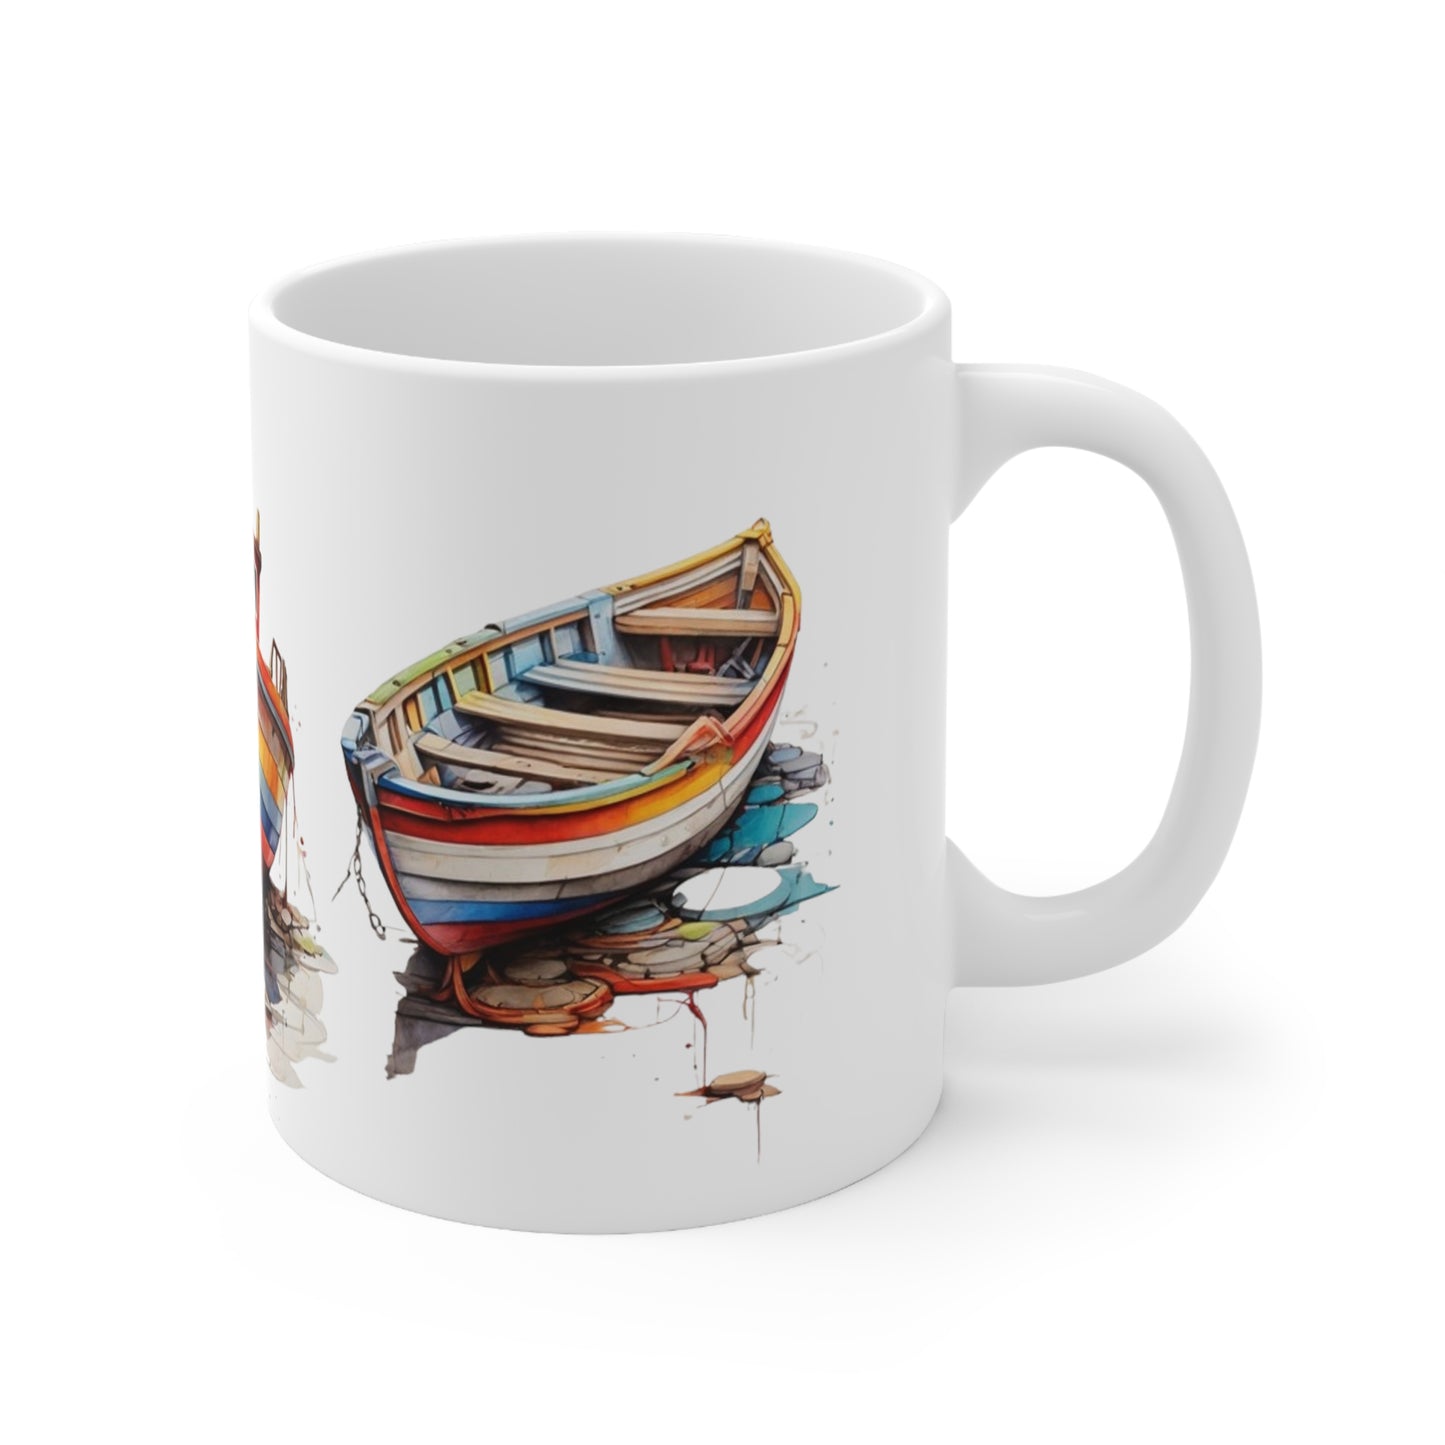 Colourful Boats Mug - Ceramic Coffee Mug 11oz